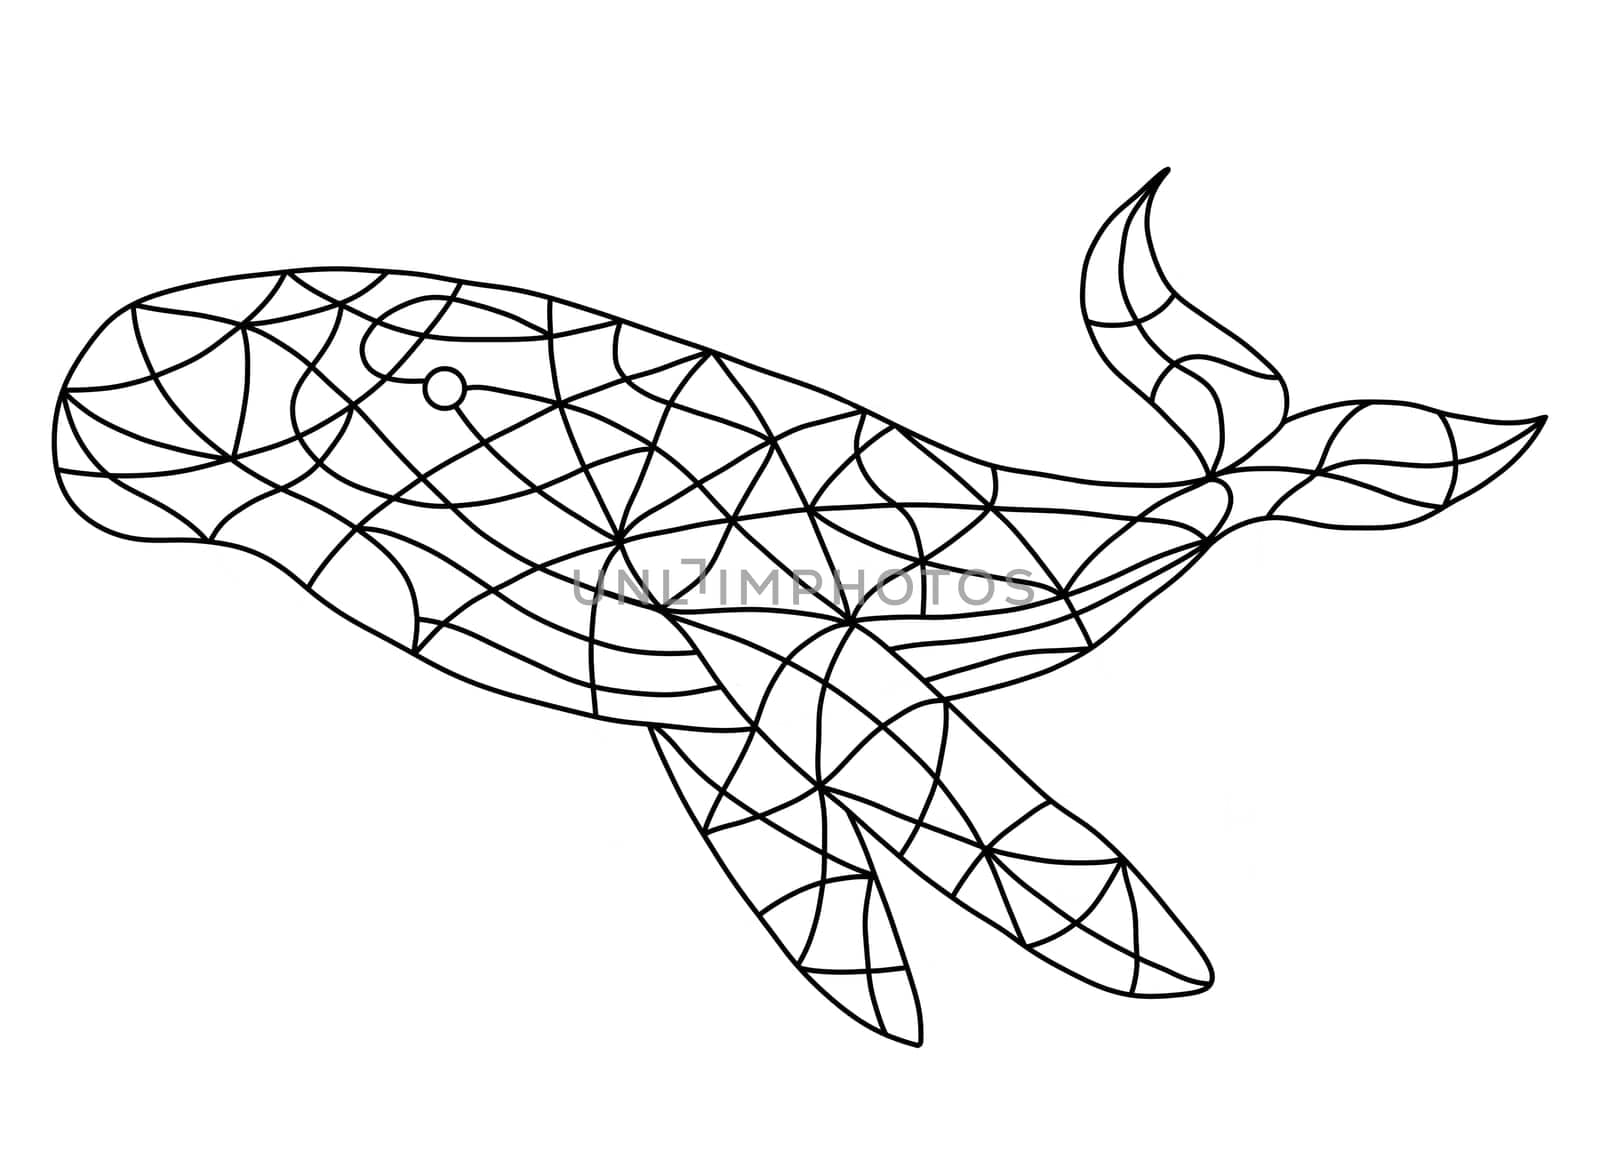 Whale Icon Illustration Isolated on White Background. by Rina_Dozornaya